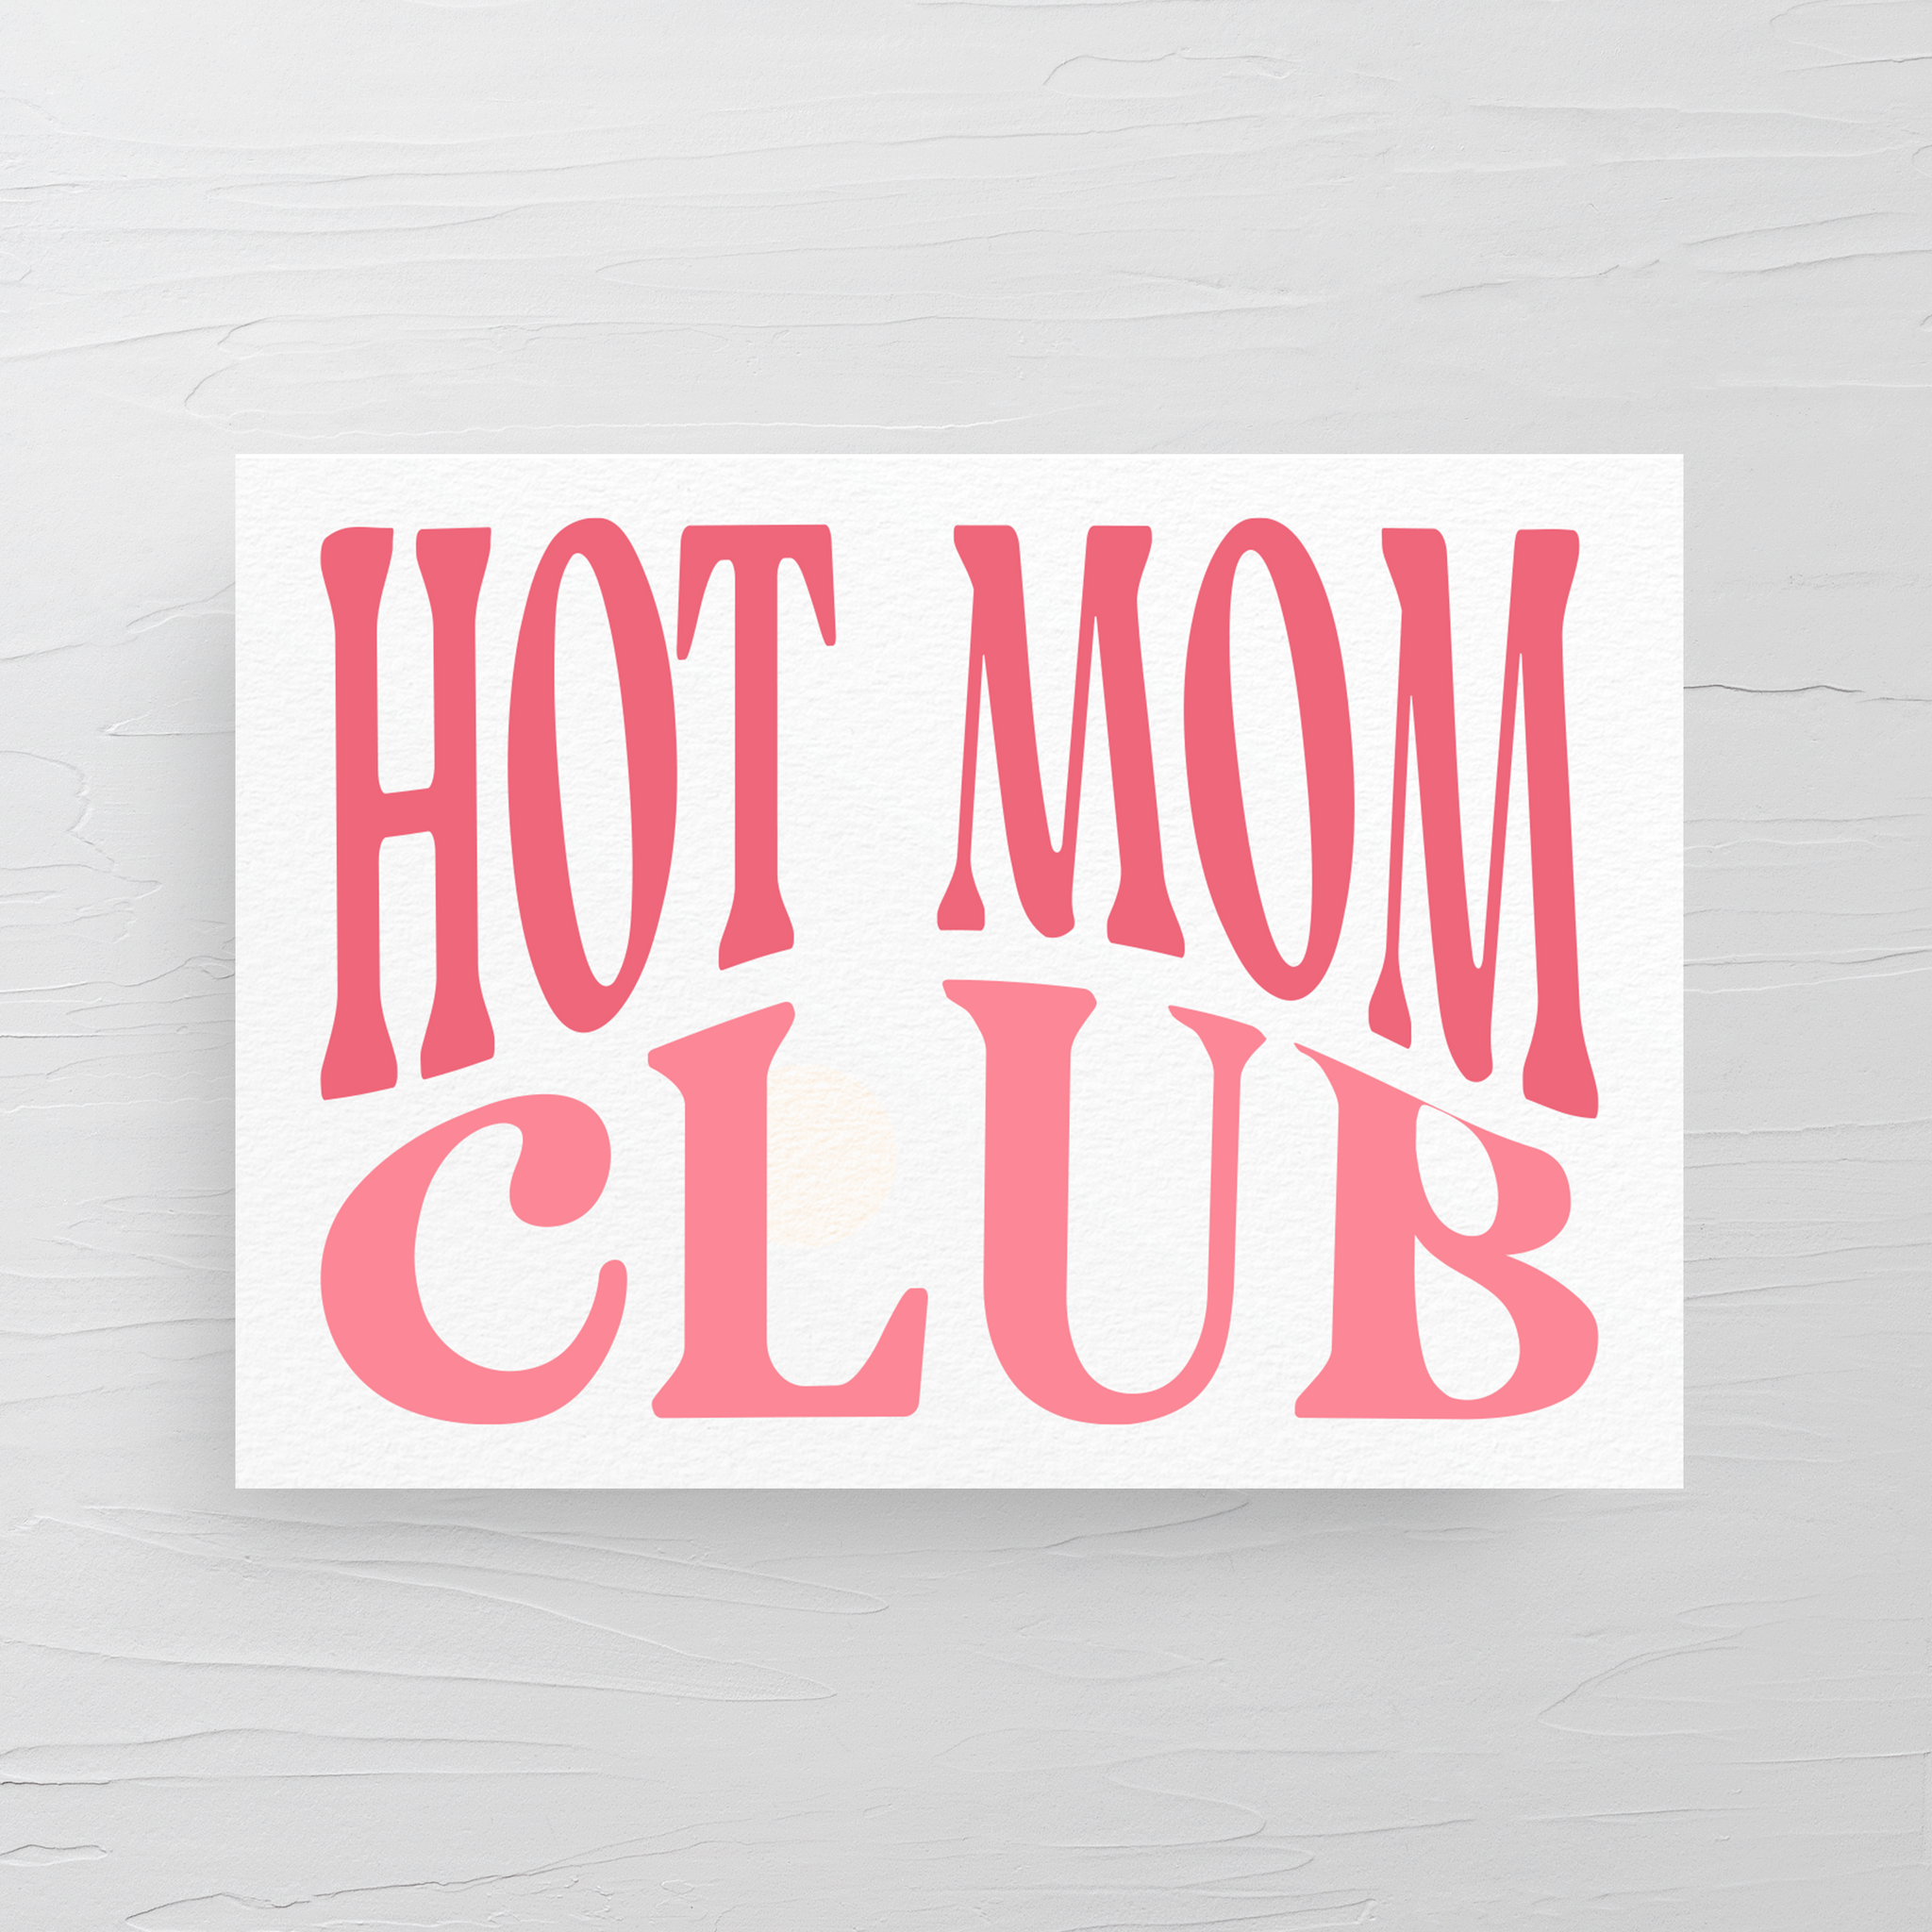 HOT MOM CLUB CARD